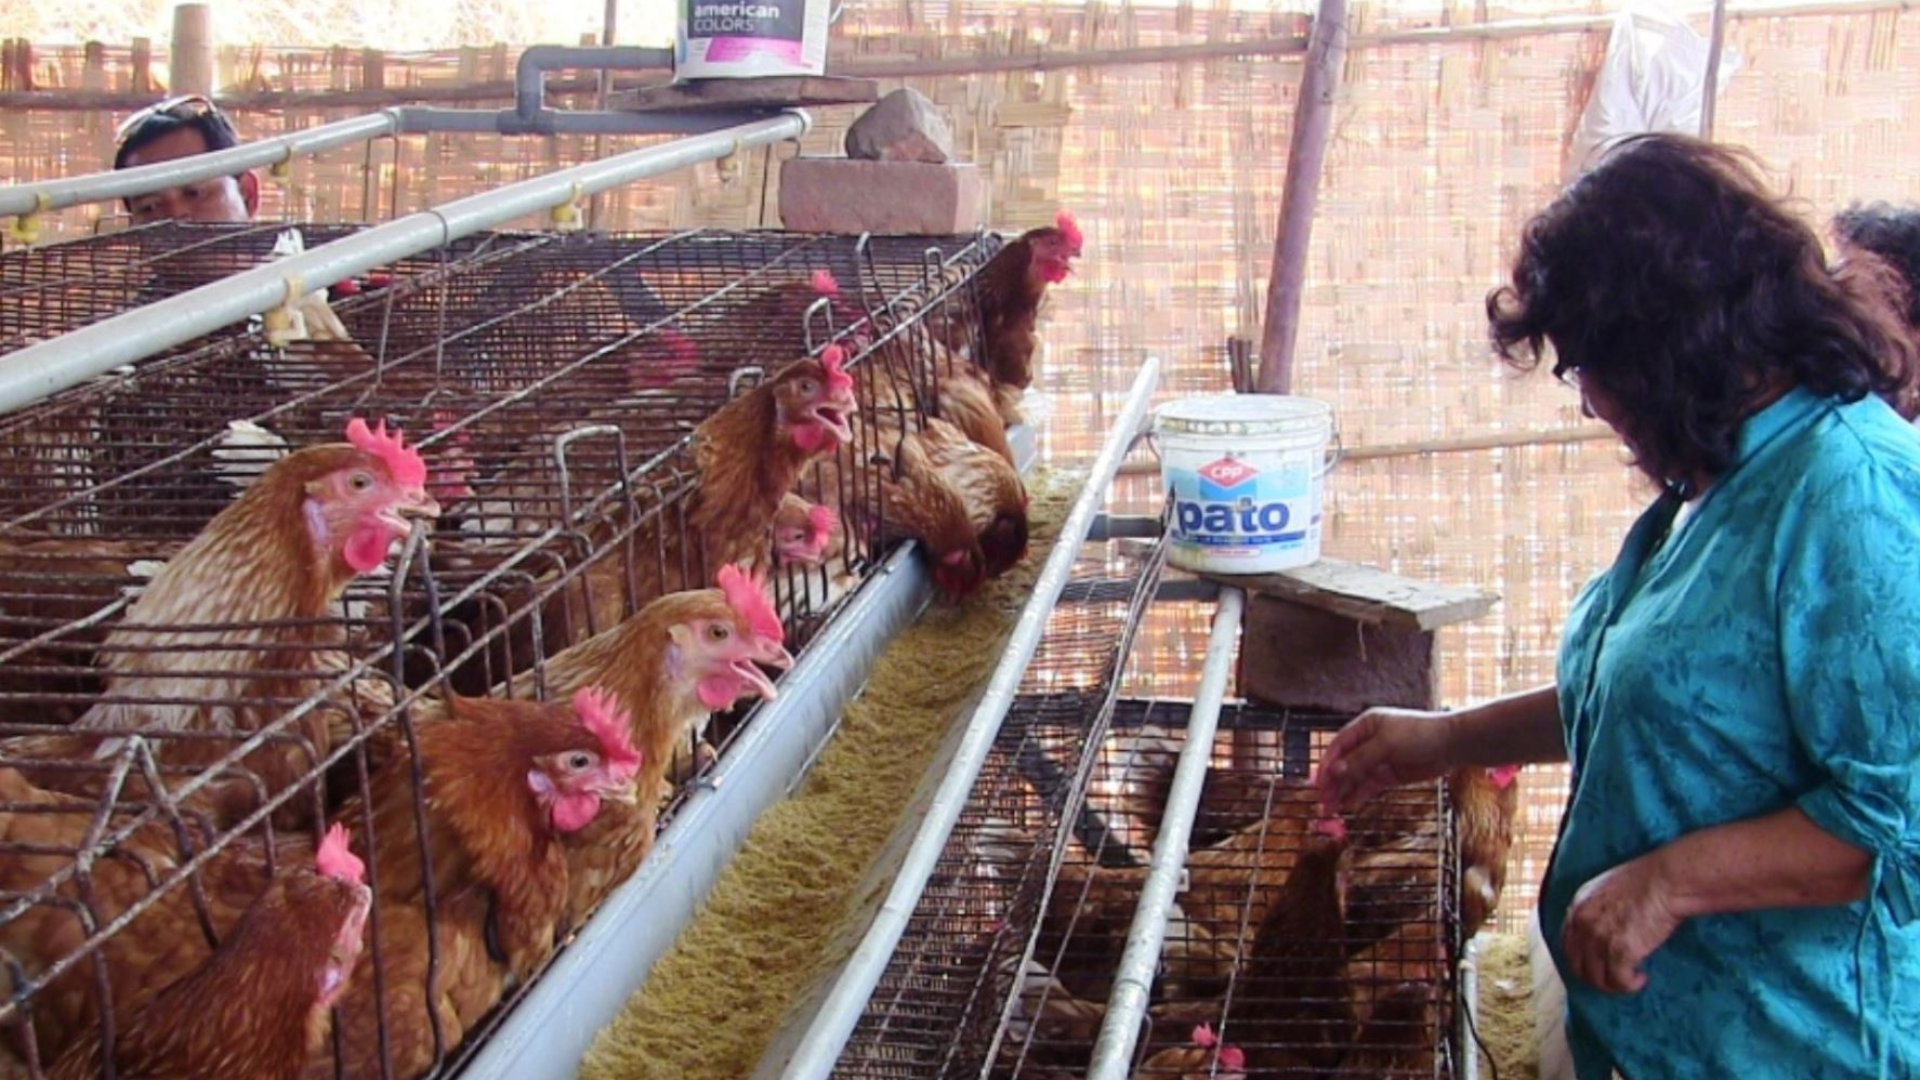 Gripe aviar en humanos en Perú
Foto: Andina